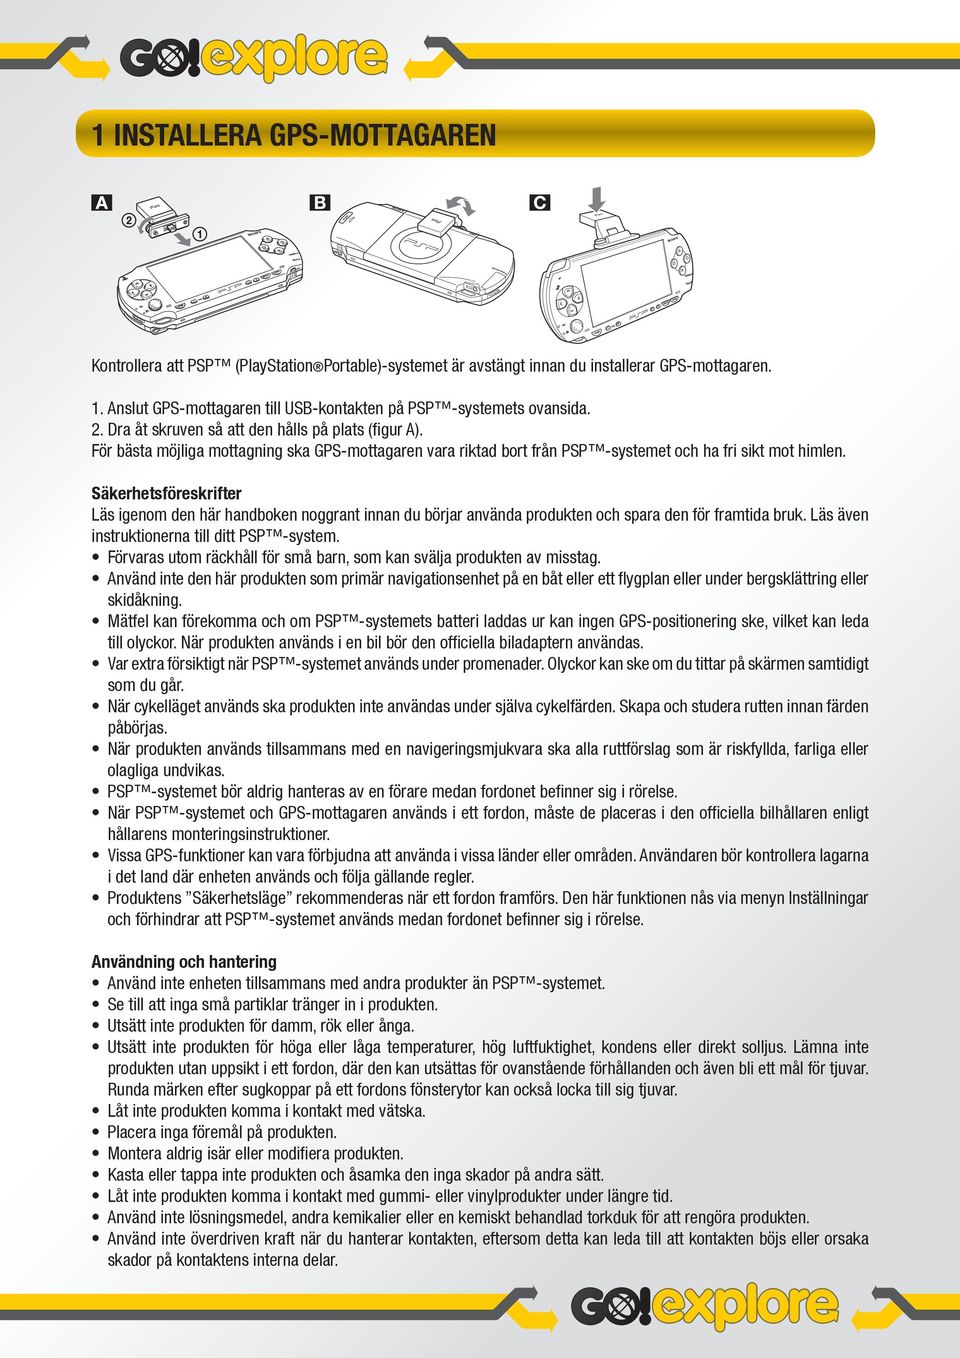 Säkerhetsföreskrifter Läs igenom den här handboken noggrant innan du börjar använda produkten och spara den för framtida bruk. Läs även instruktionerna till ditt PSP -system.